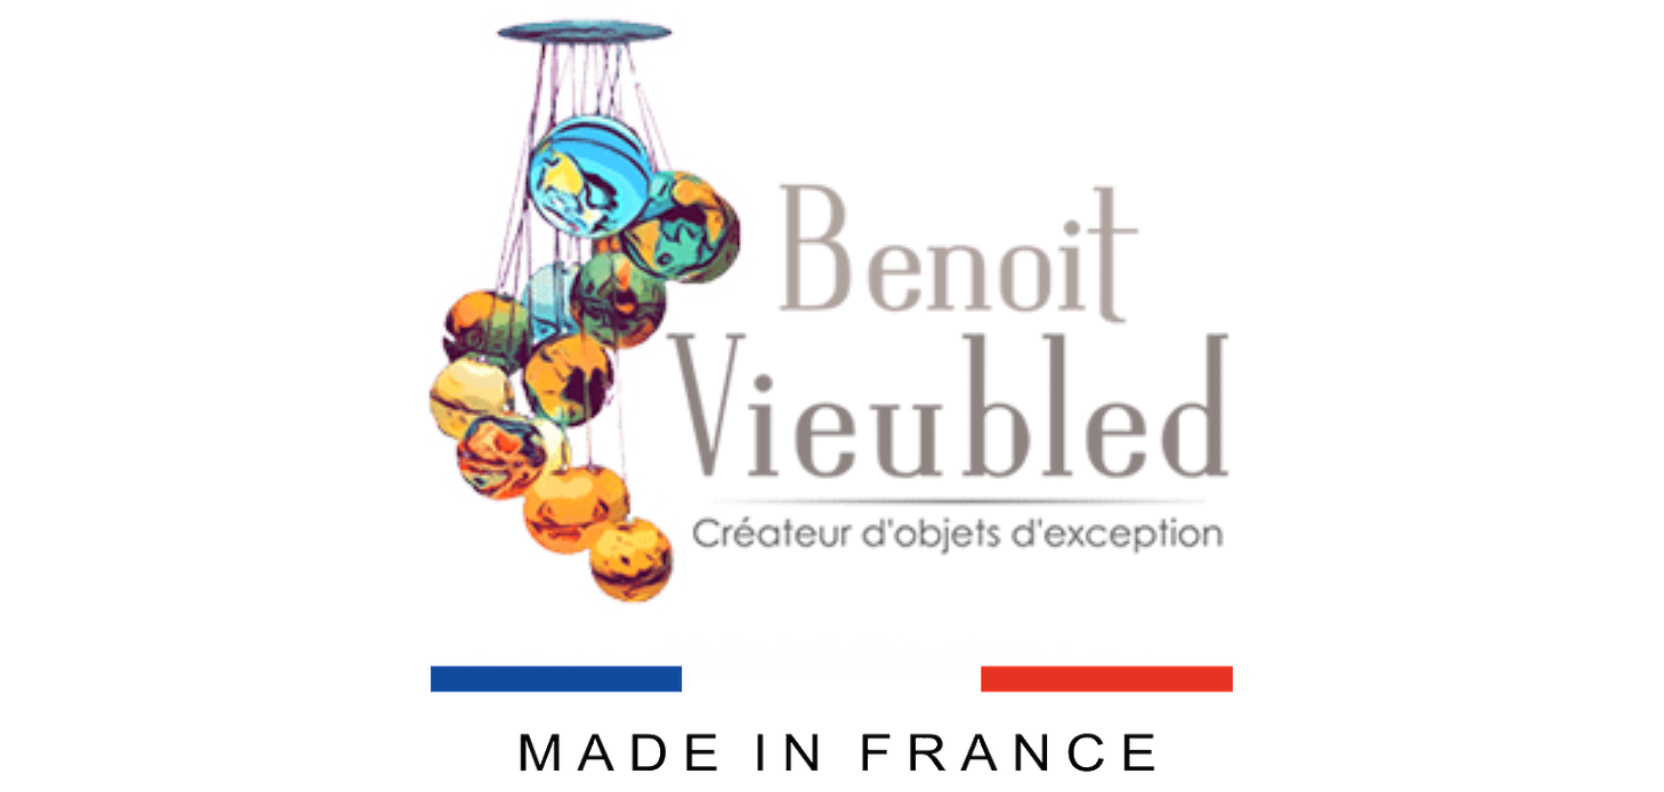 Lampe Carla la lionne Benoit Vieubled - Vente en ligne decoration